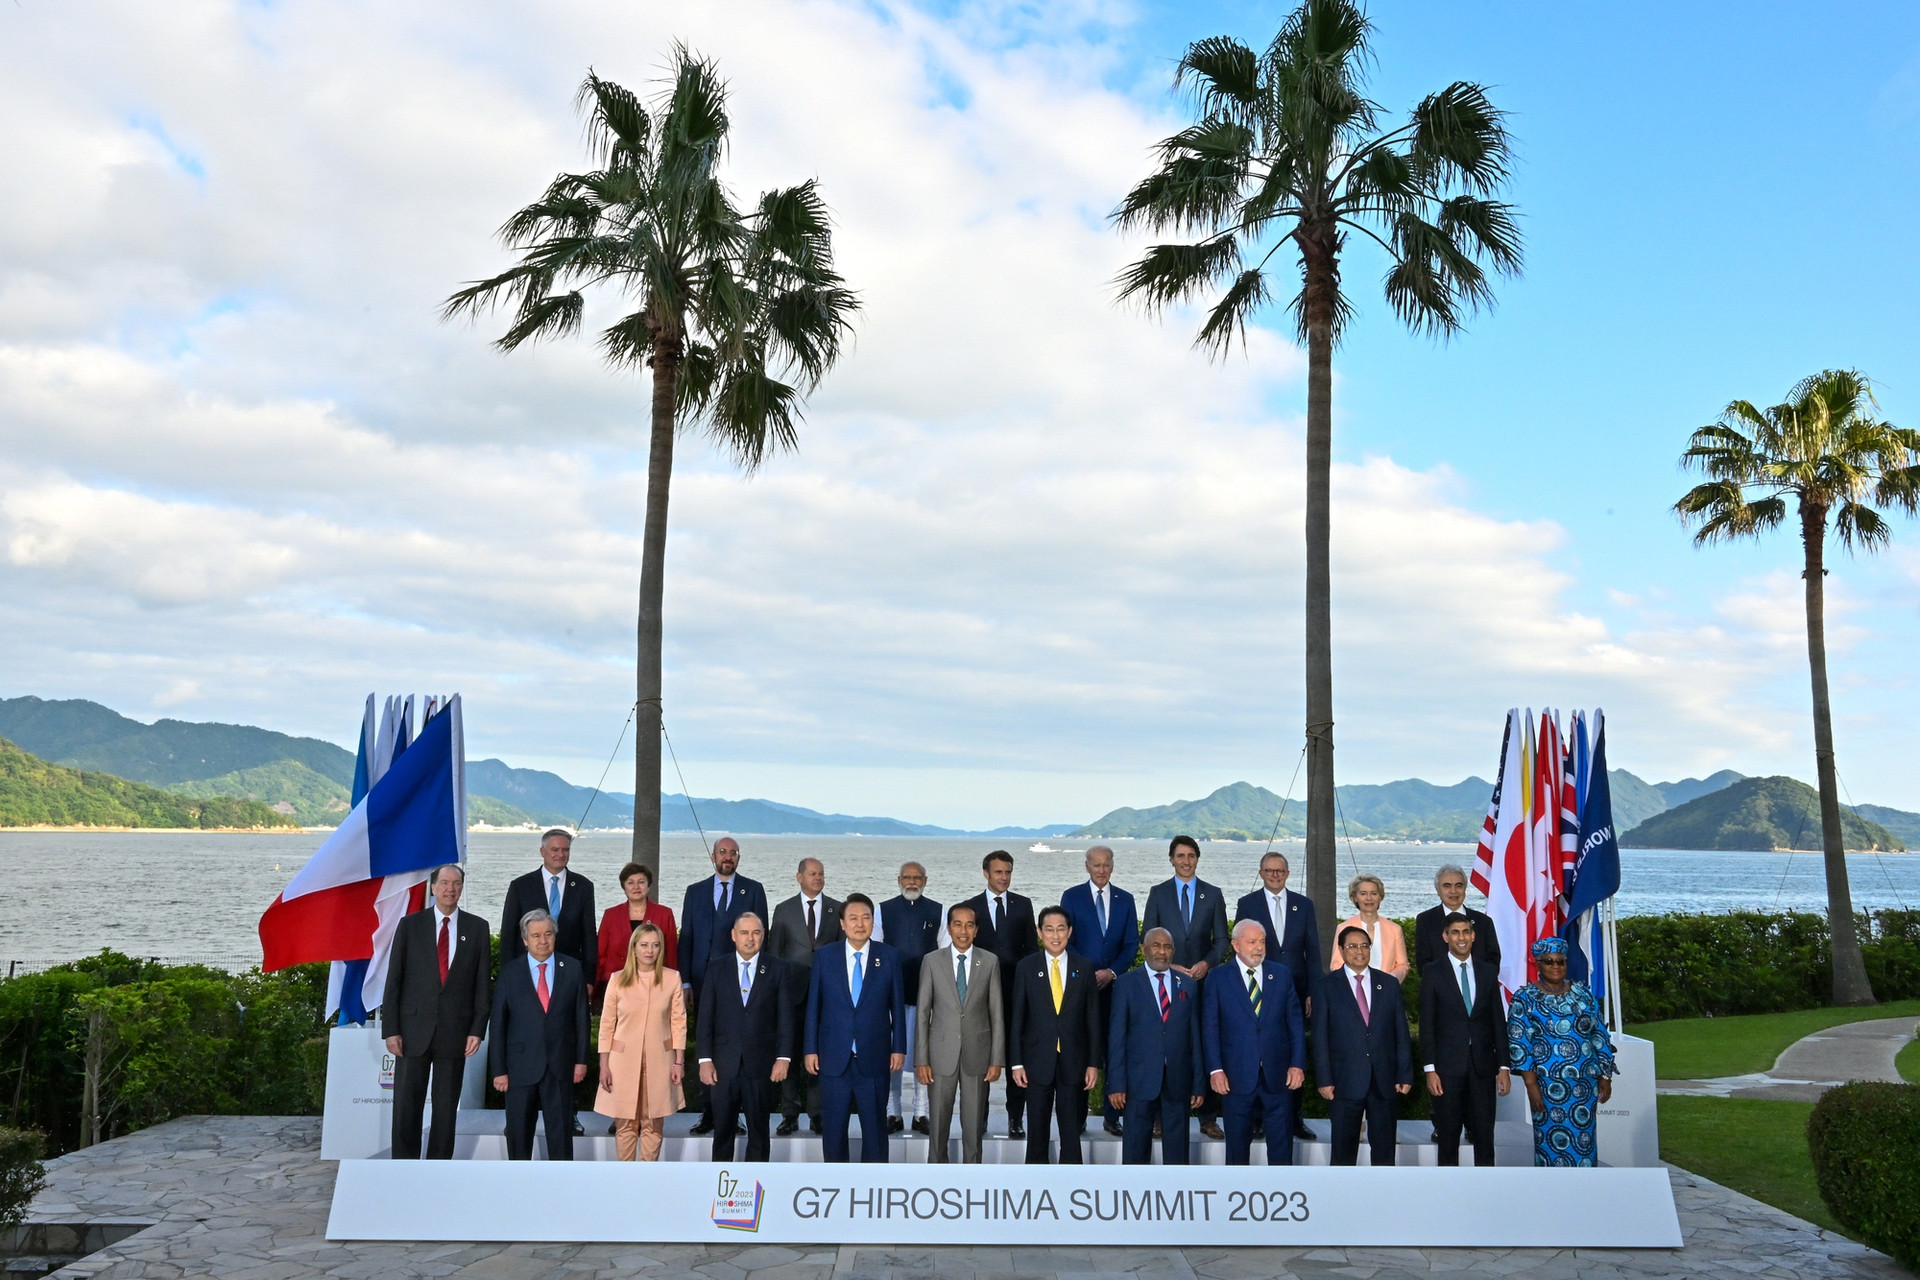 Thủ tướng đề nghị G7 hỗ trợ Việt Nam trở thành trung tâm năng lượng tái tạo - Ảnh 3.